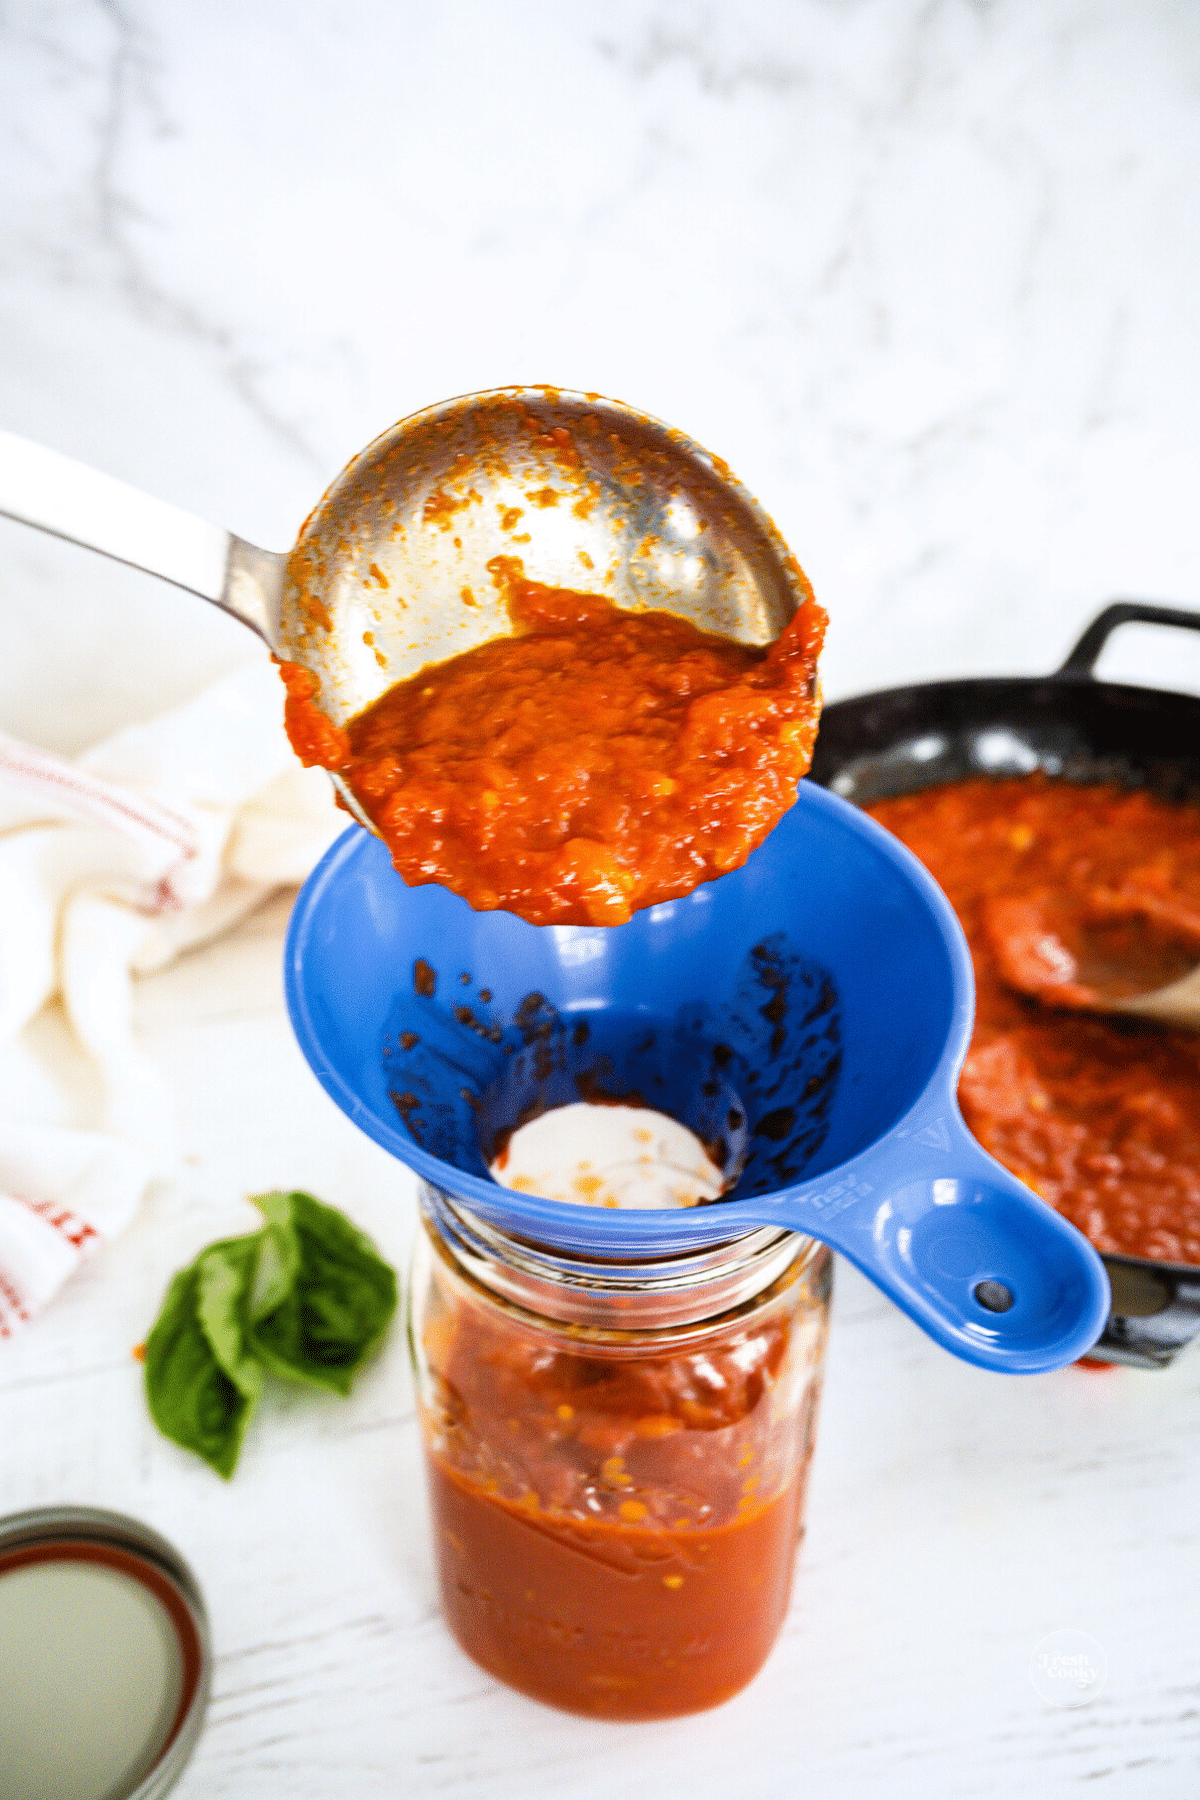 Ladling marinara sauce into a jar.